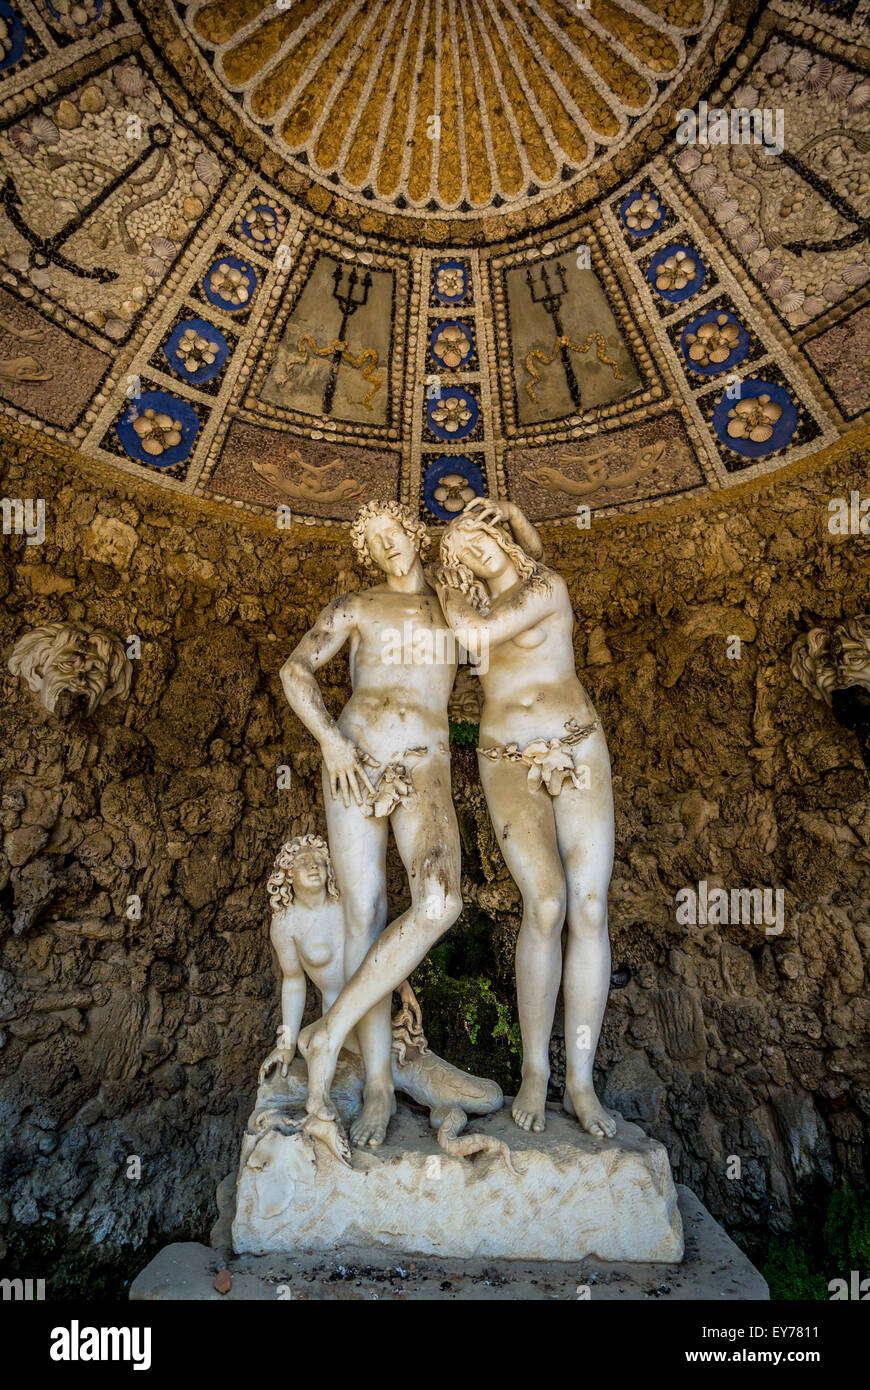 La Grotte d'Adam et d'Eve qui tire son nom des sculptures qu'elle contient de Michel-Ange Noccherini.Jardins Boboli.Florence.Italie. Banque D'Images